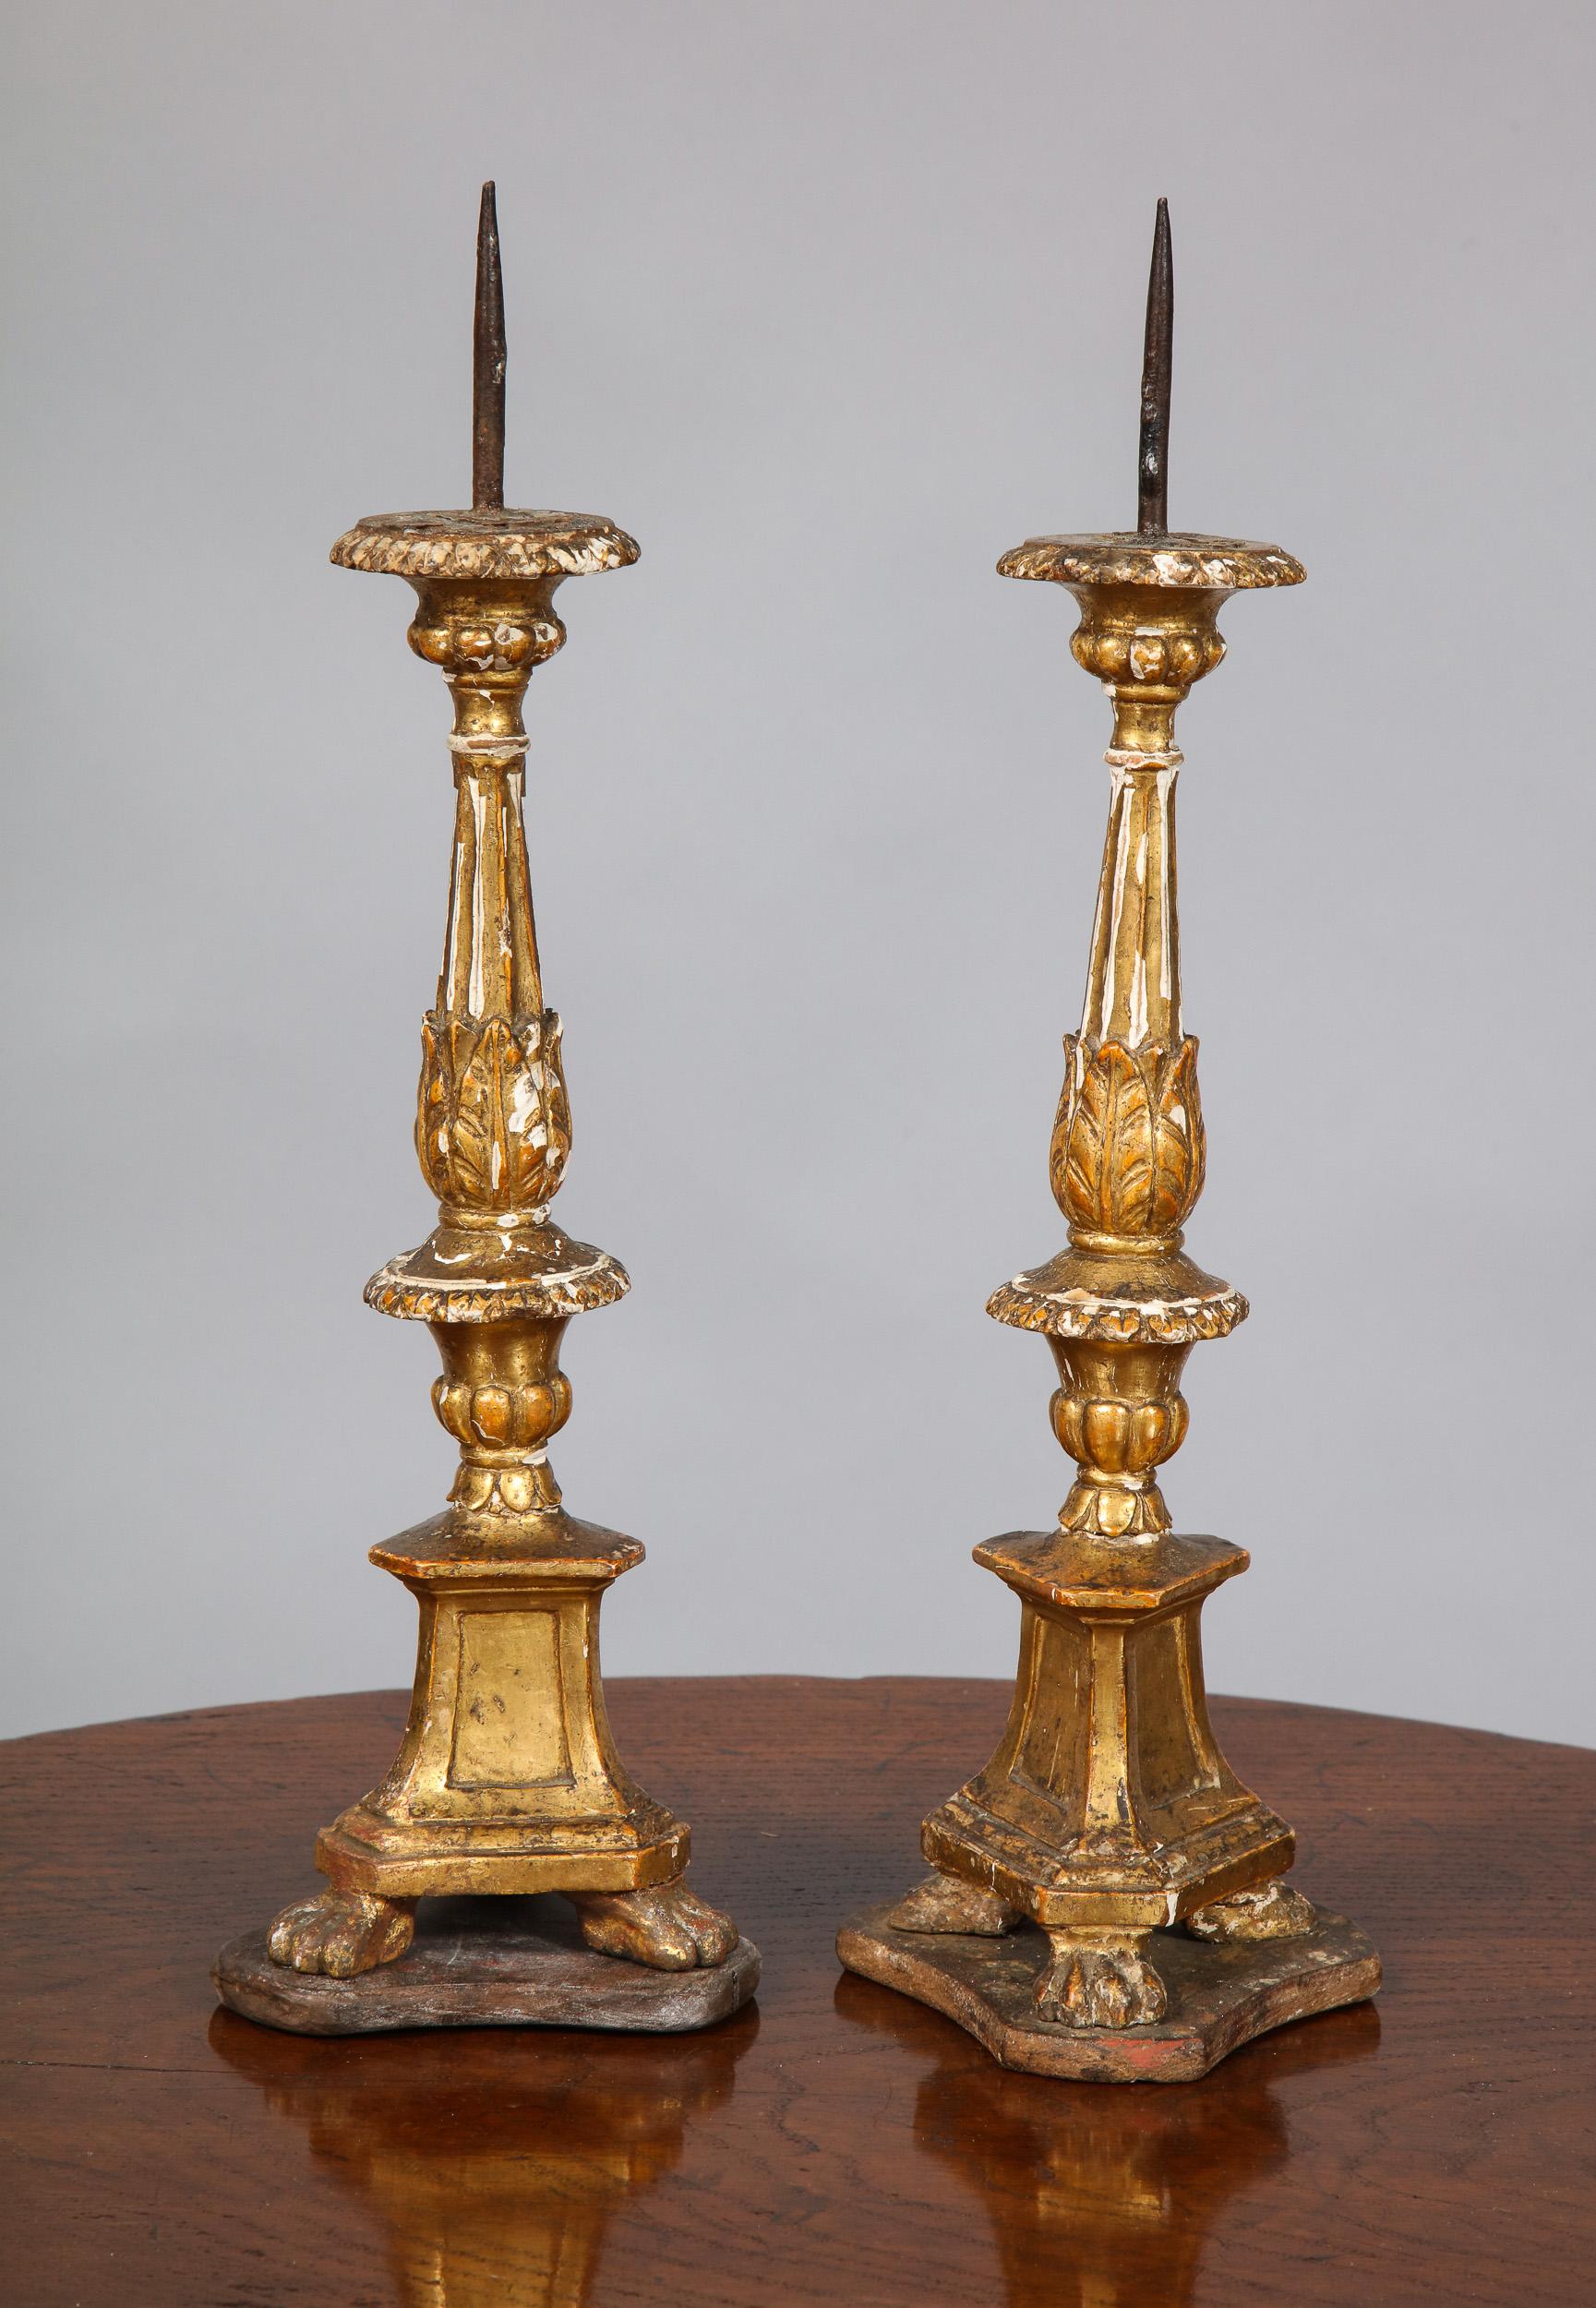 Feines Paar italienischer vergoldeter Kerzenständer aus dem 18. Jahrhundert mit originalem Wasservergoldungsdekor, mit Blattschnitzereien, kannelierten Schäften und auf plattigen Tatzenfüßen stehend, in 